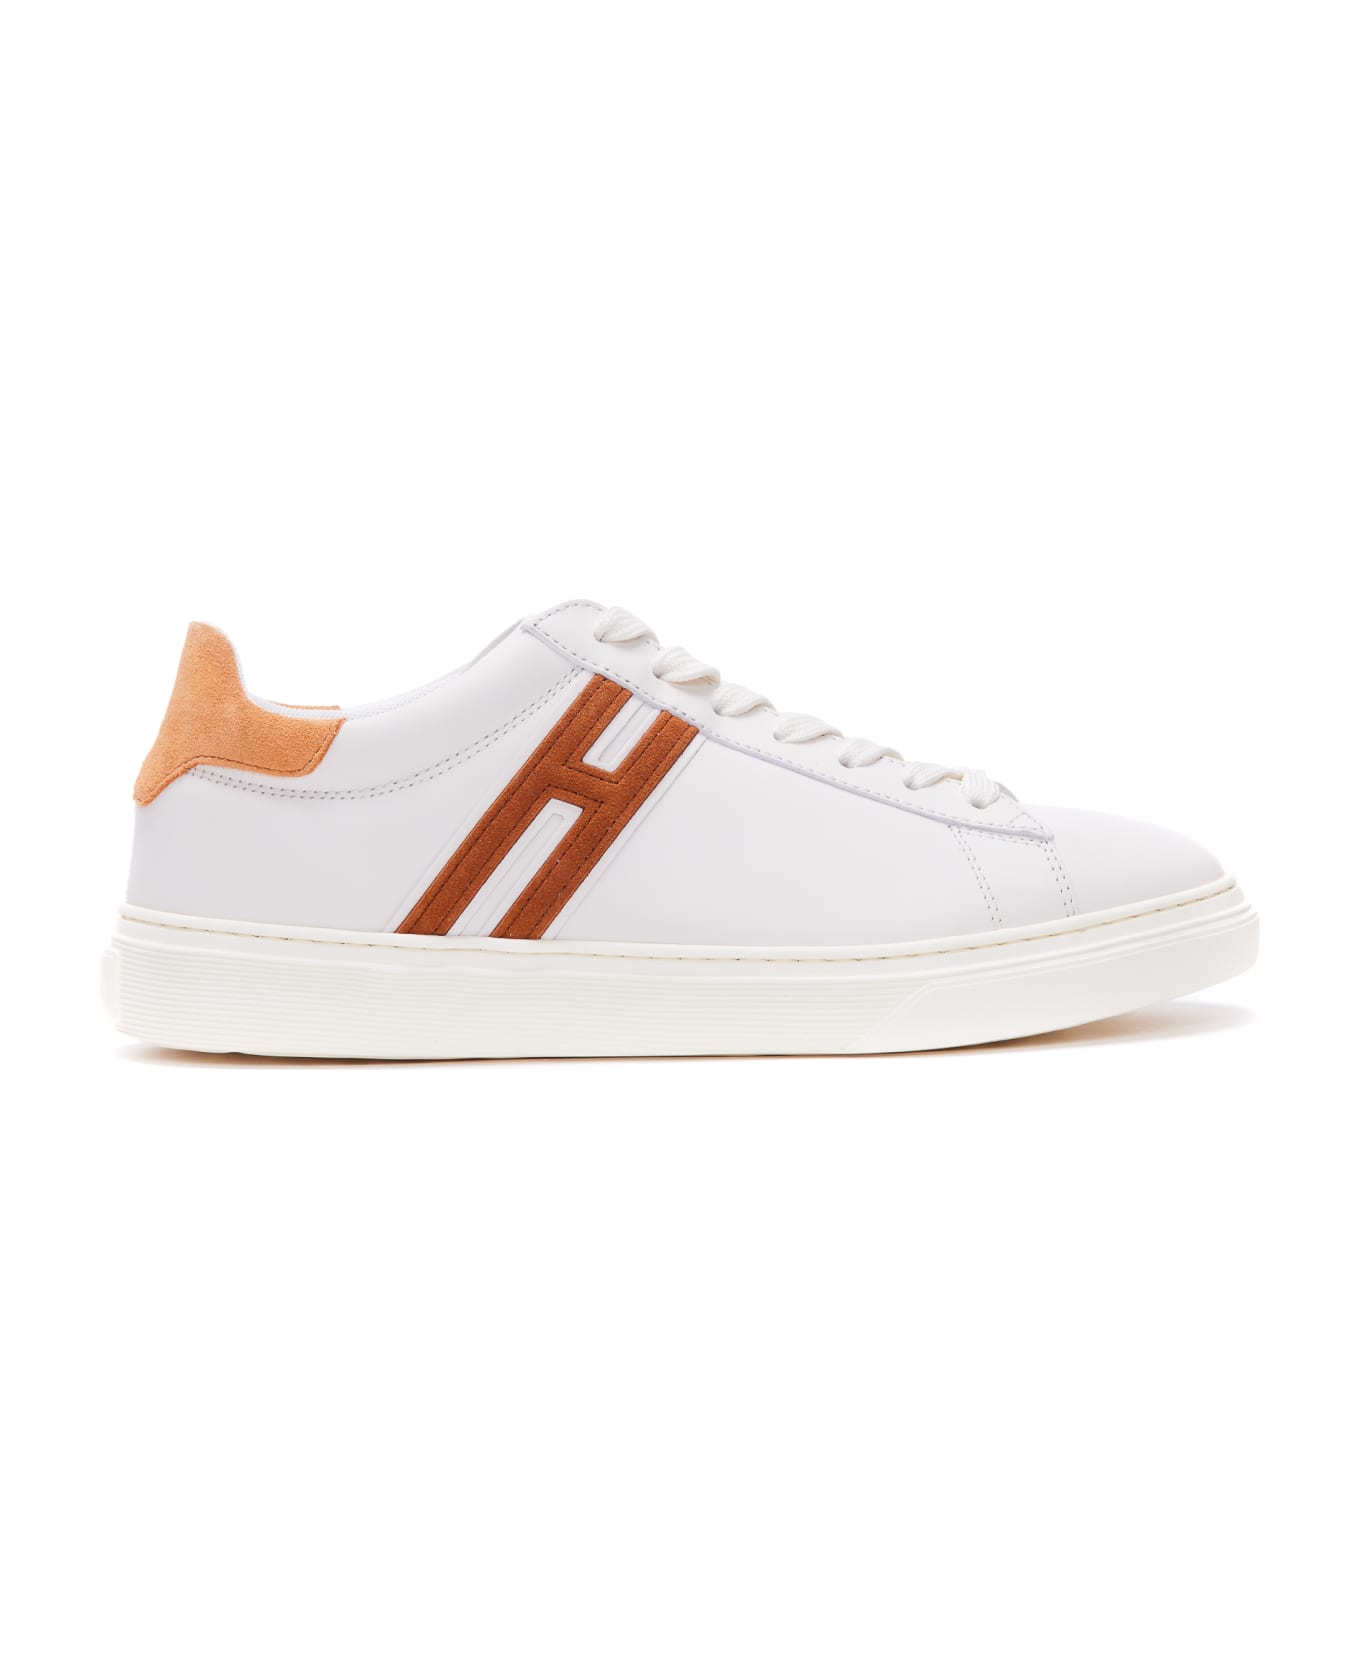 Hogan H365 Sneakers - Avorio/Arancio